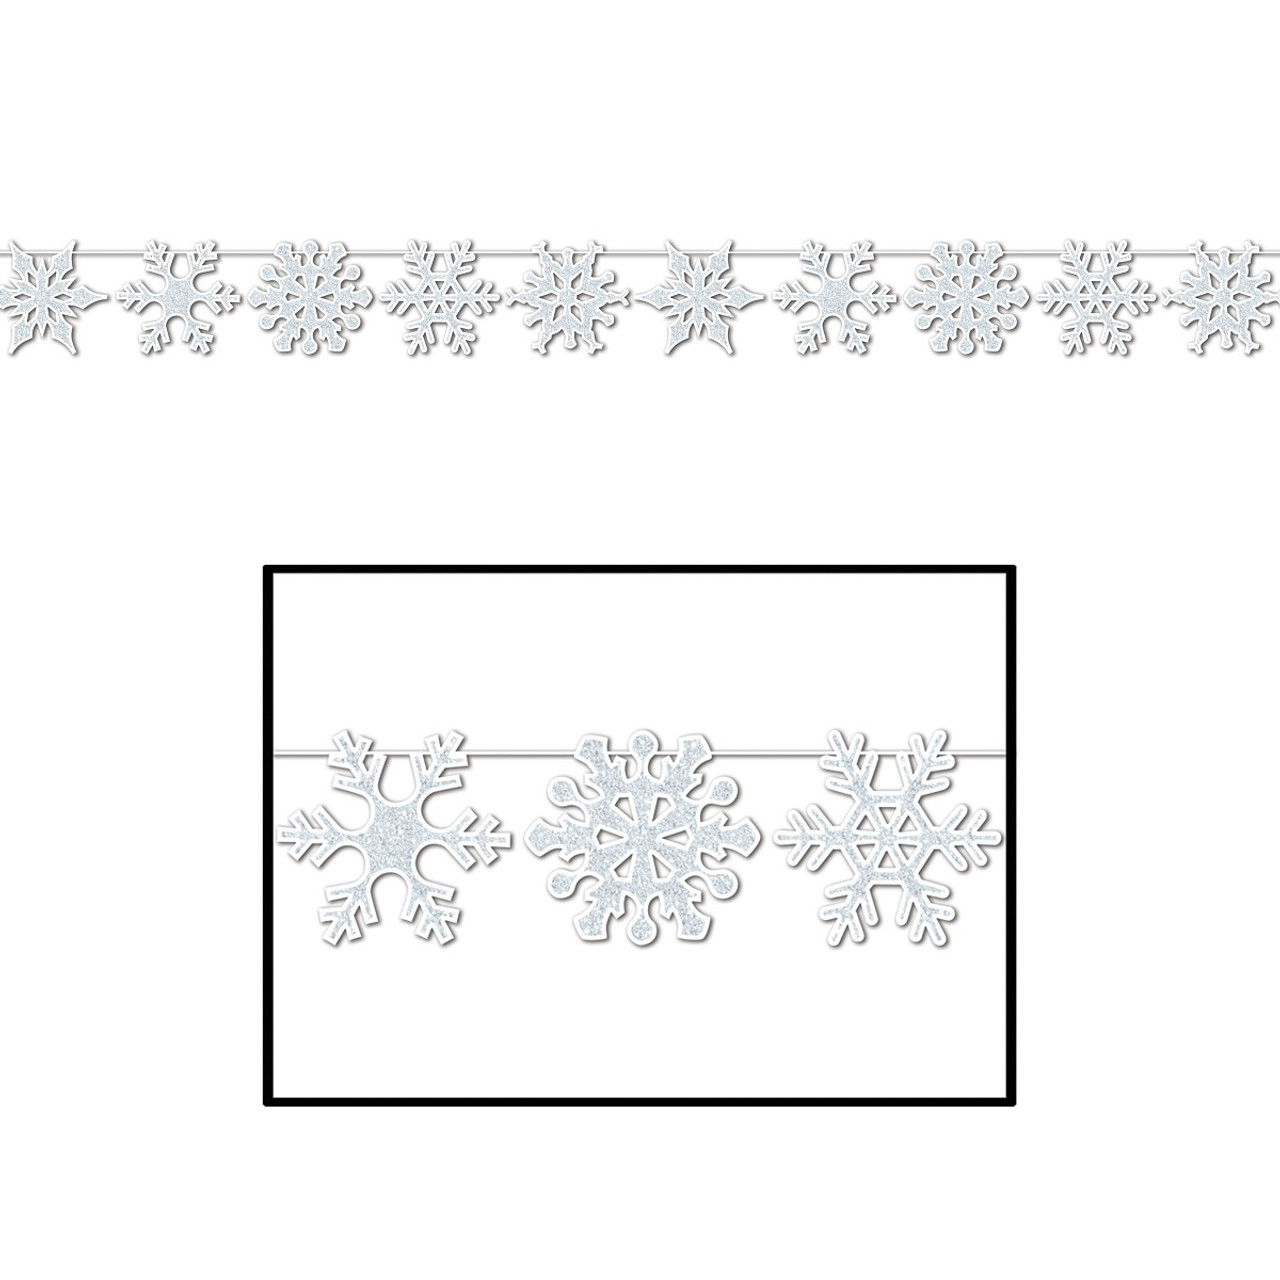 Beistle Snowflake Cutouts, White - 9 count